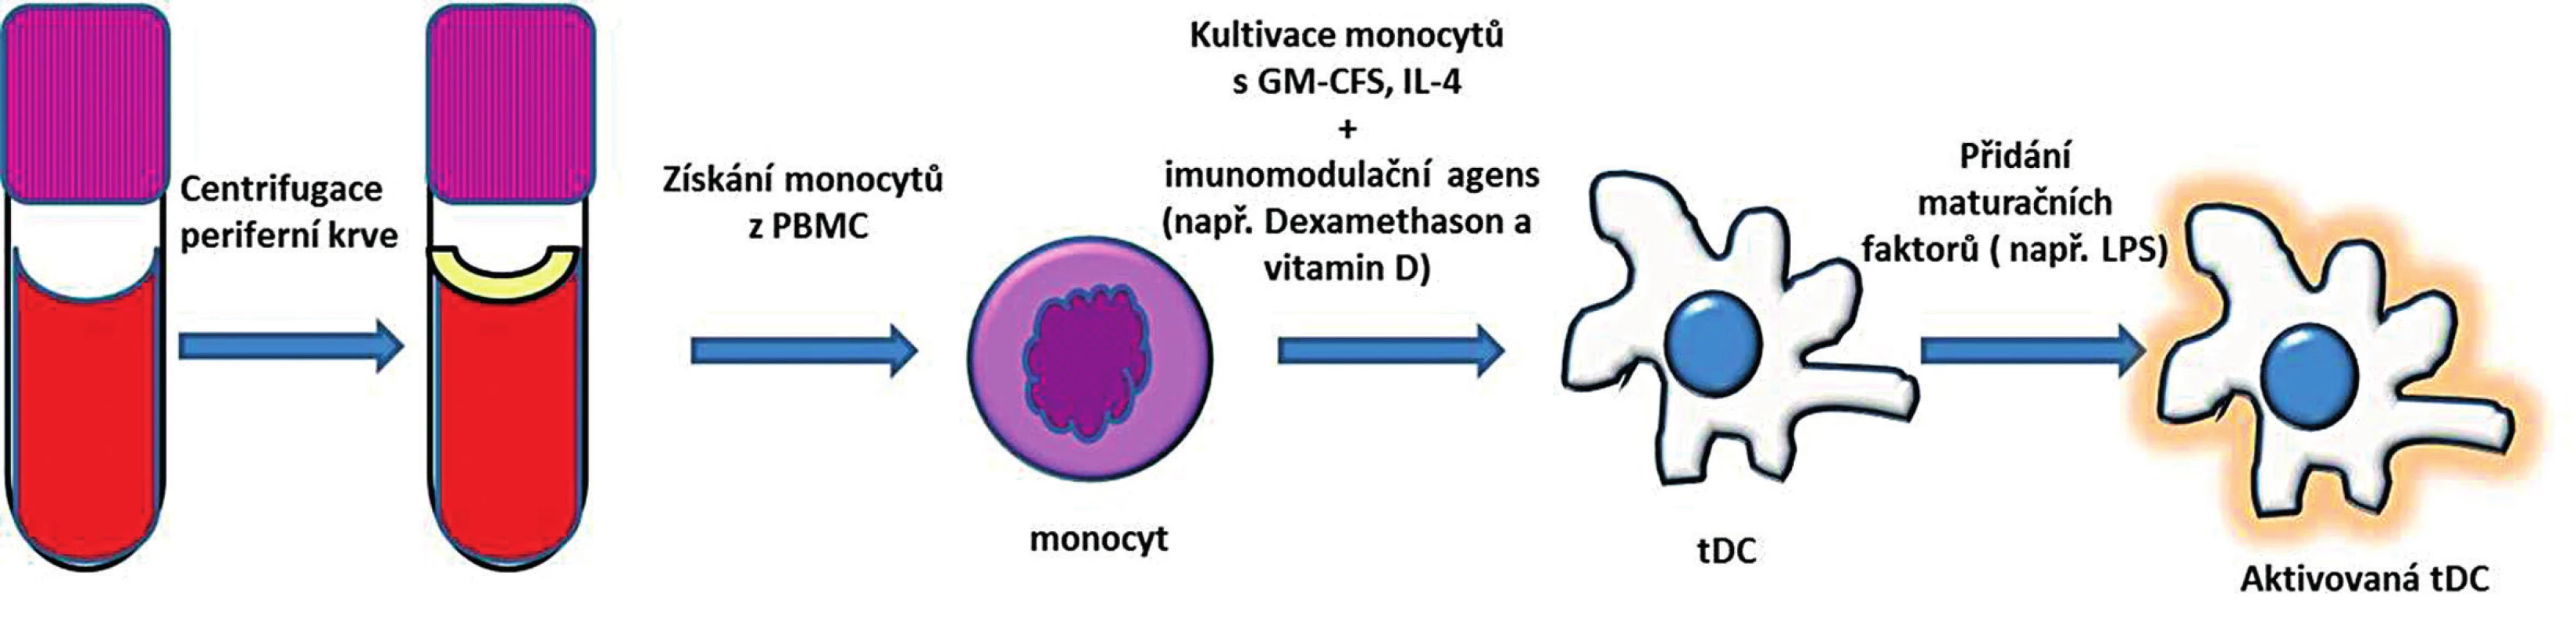 Příprava tolerogenních dendritických buněk z periferní krve.
Monocyty izolované z PBMC jsou kultivované za přítomnosti GM-CSF a IL-4 a imunomodulačního agens. Po přidání maturačního stimulu vznikne aktivovaná tDC, která má na rozdíl od aktivované zralé DC menší schopnost indukovat imunitní odpověď a vyznačuje se spíše imunoregulačním potenciálem.
PBMC – peripheral blood mononuclear cells (periferní mononukleární buňky); GM-CSF – granulocyte-macrophage colony-stimulating factor (růstový hormon pro granulocyty a makrofágy); IL-4 – interleukin 4; tDC – tolerogenní dendritické buňky
Fig. 2. Generation of tolerogenic dendritic cells from peripheral blood.
Monocytes are isolated from peripheral blood mononuclear cells (PBMC) and are cultured in the presence of GM-CSF, IL-4 and immunomodulatory agents. Further stimulation with maturation agent gives rise of activated tDC. The capacity of tDC for inducing an immune response is inferior to that of activated mature DC. 
PBMC – peripheral blood mononuclear cells; GM-CSF – granulocyte-macrophage colony-stimulating factor; IL-4 – interleukin 4; tDC – tolerogenic dendritic cells